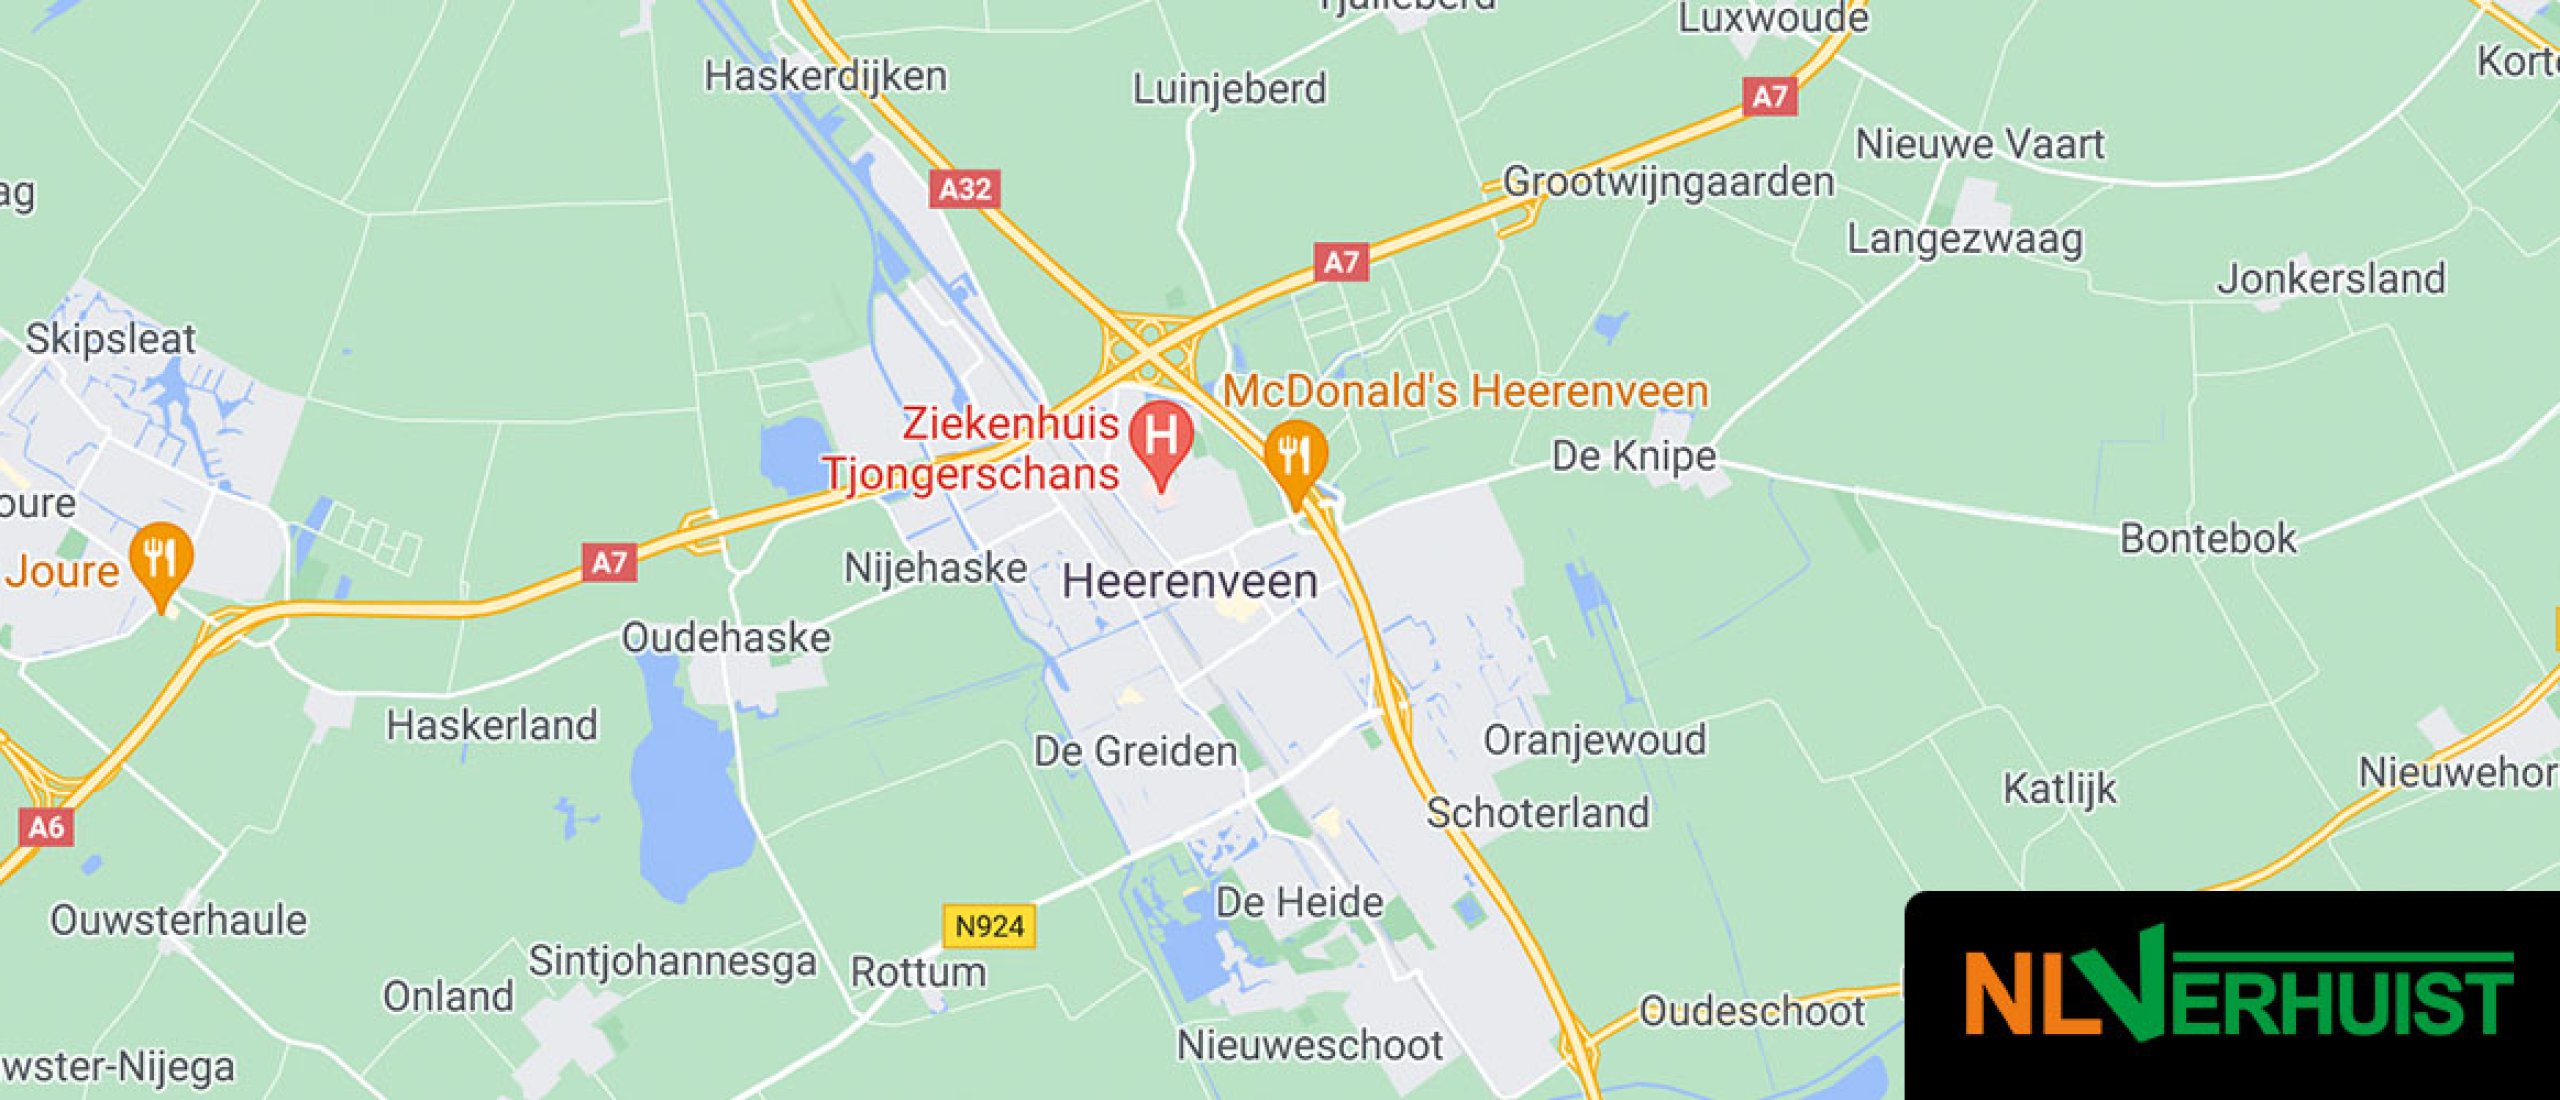 Makelaar Heerenveen - NLVERHUIST